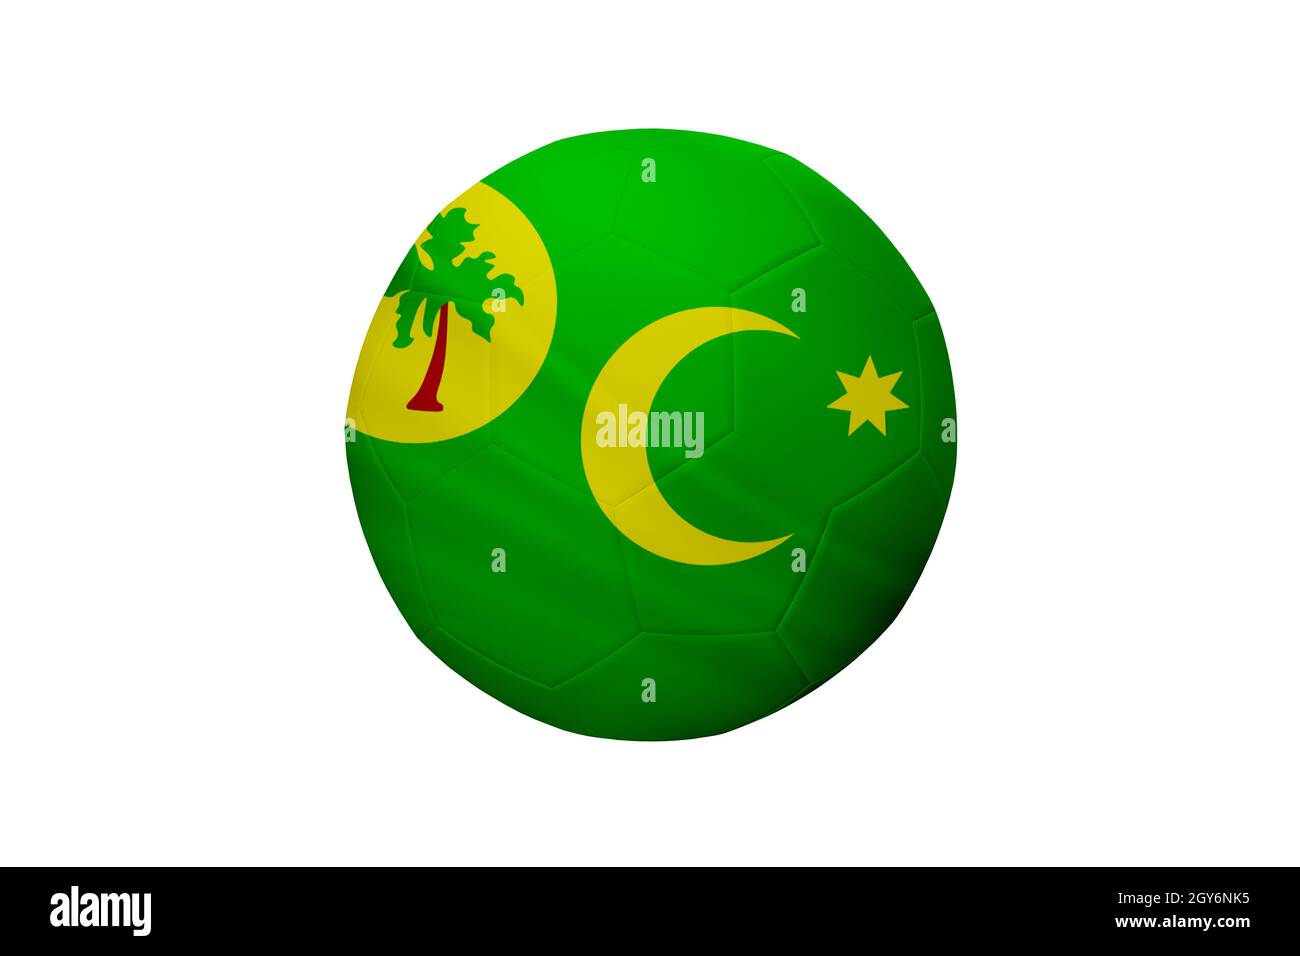 Fußball in den Farben der Flagge der Kokosinseln isoliert auf weißem Hintergrund. In einem konzeptionellen Meisterschaftsbild, das die Kokosinseln unterstützt. Stockfoto